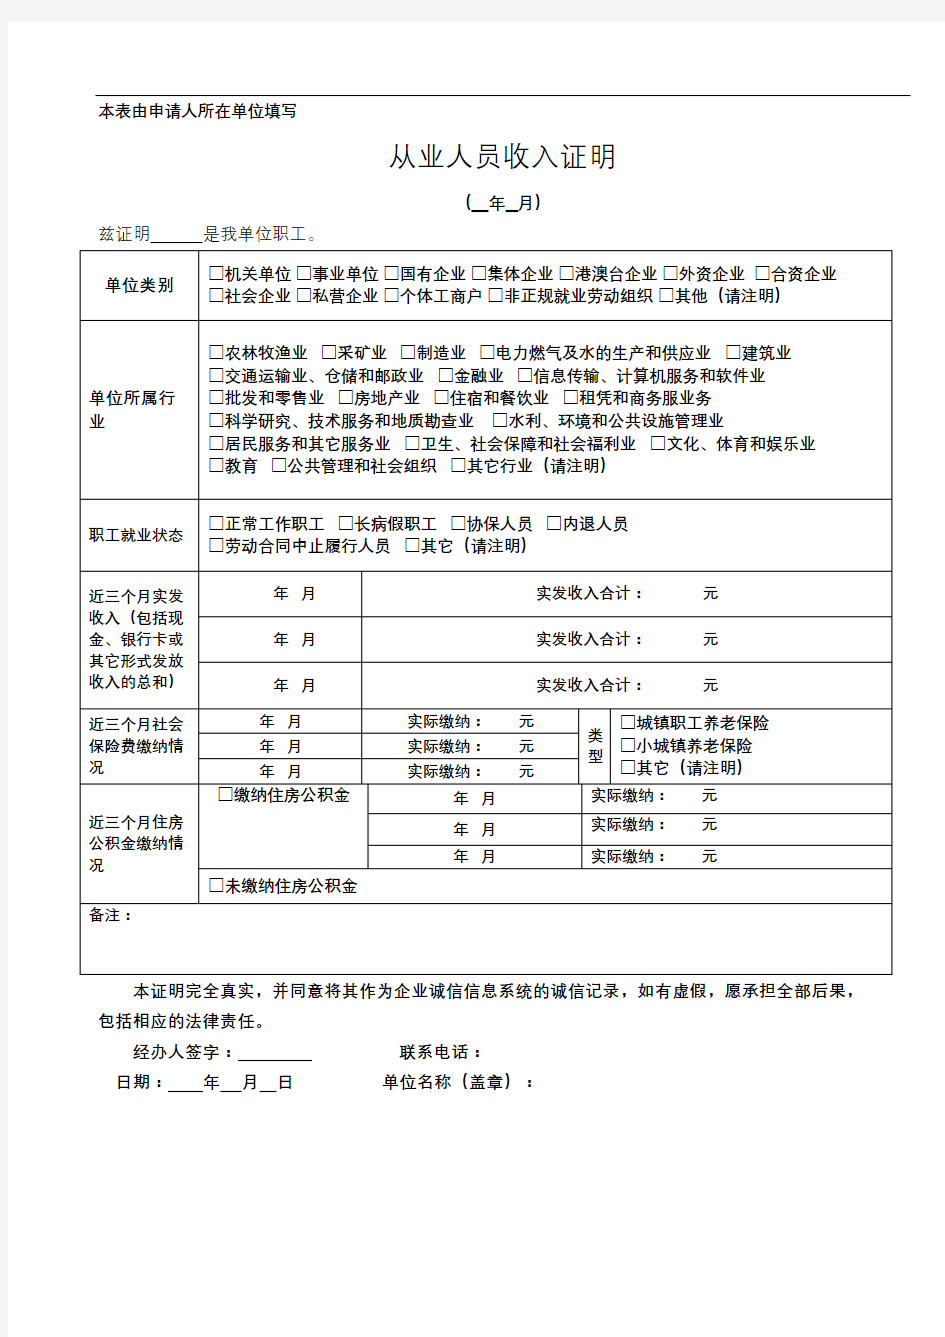 上海从业人员收入证明